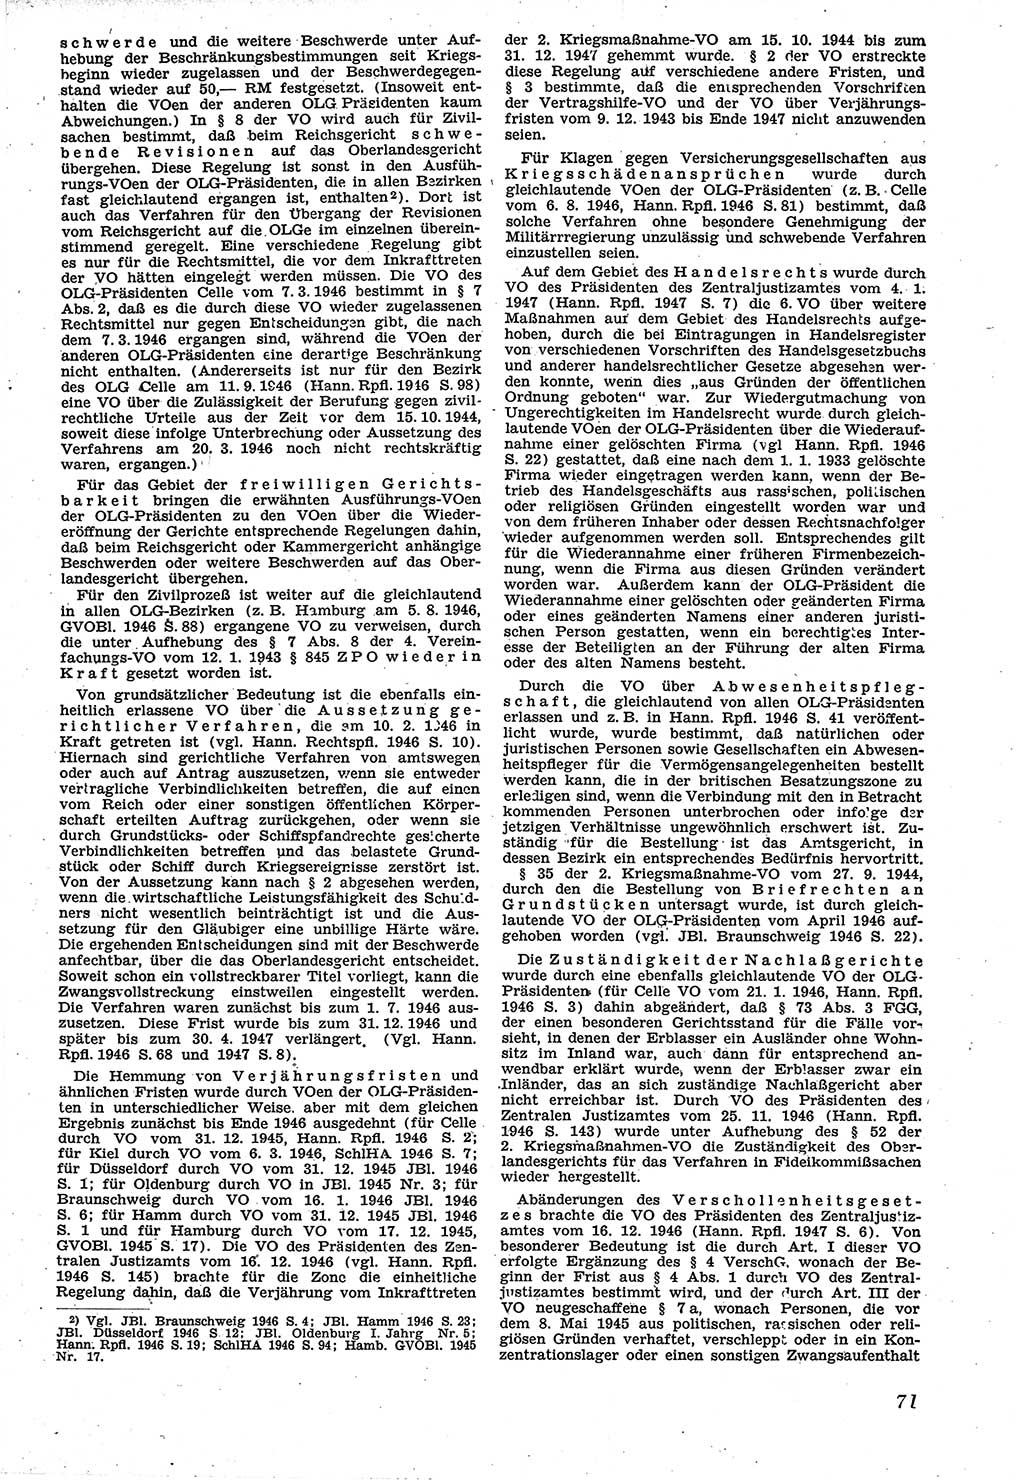 Neue Justiz (NJ), Zeitschrift für Recht und Rechtswissenschaft [Sowjetische Besatzungszone (SBZ) Deutschland], 1. Jahrgang 1947, Seite 71 (NJ SBZ Dtl. 1947, S. 71)